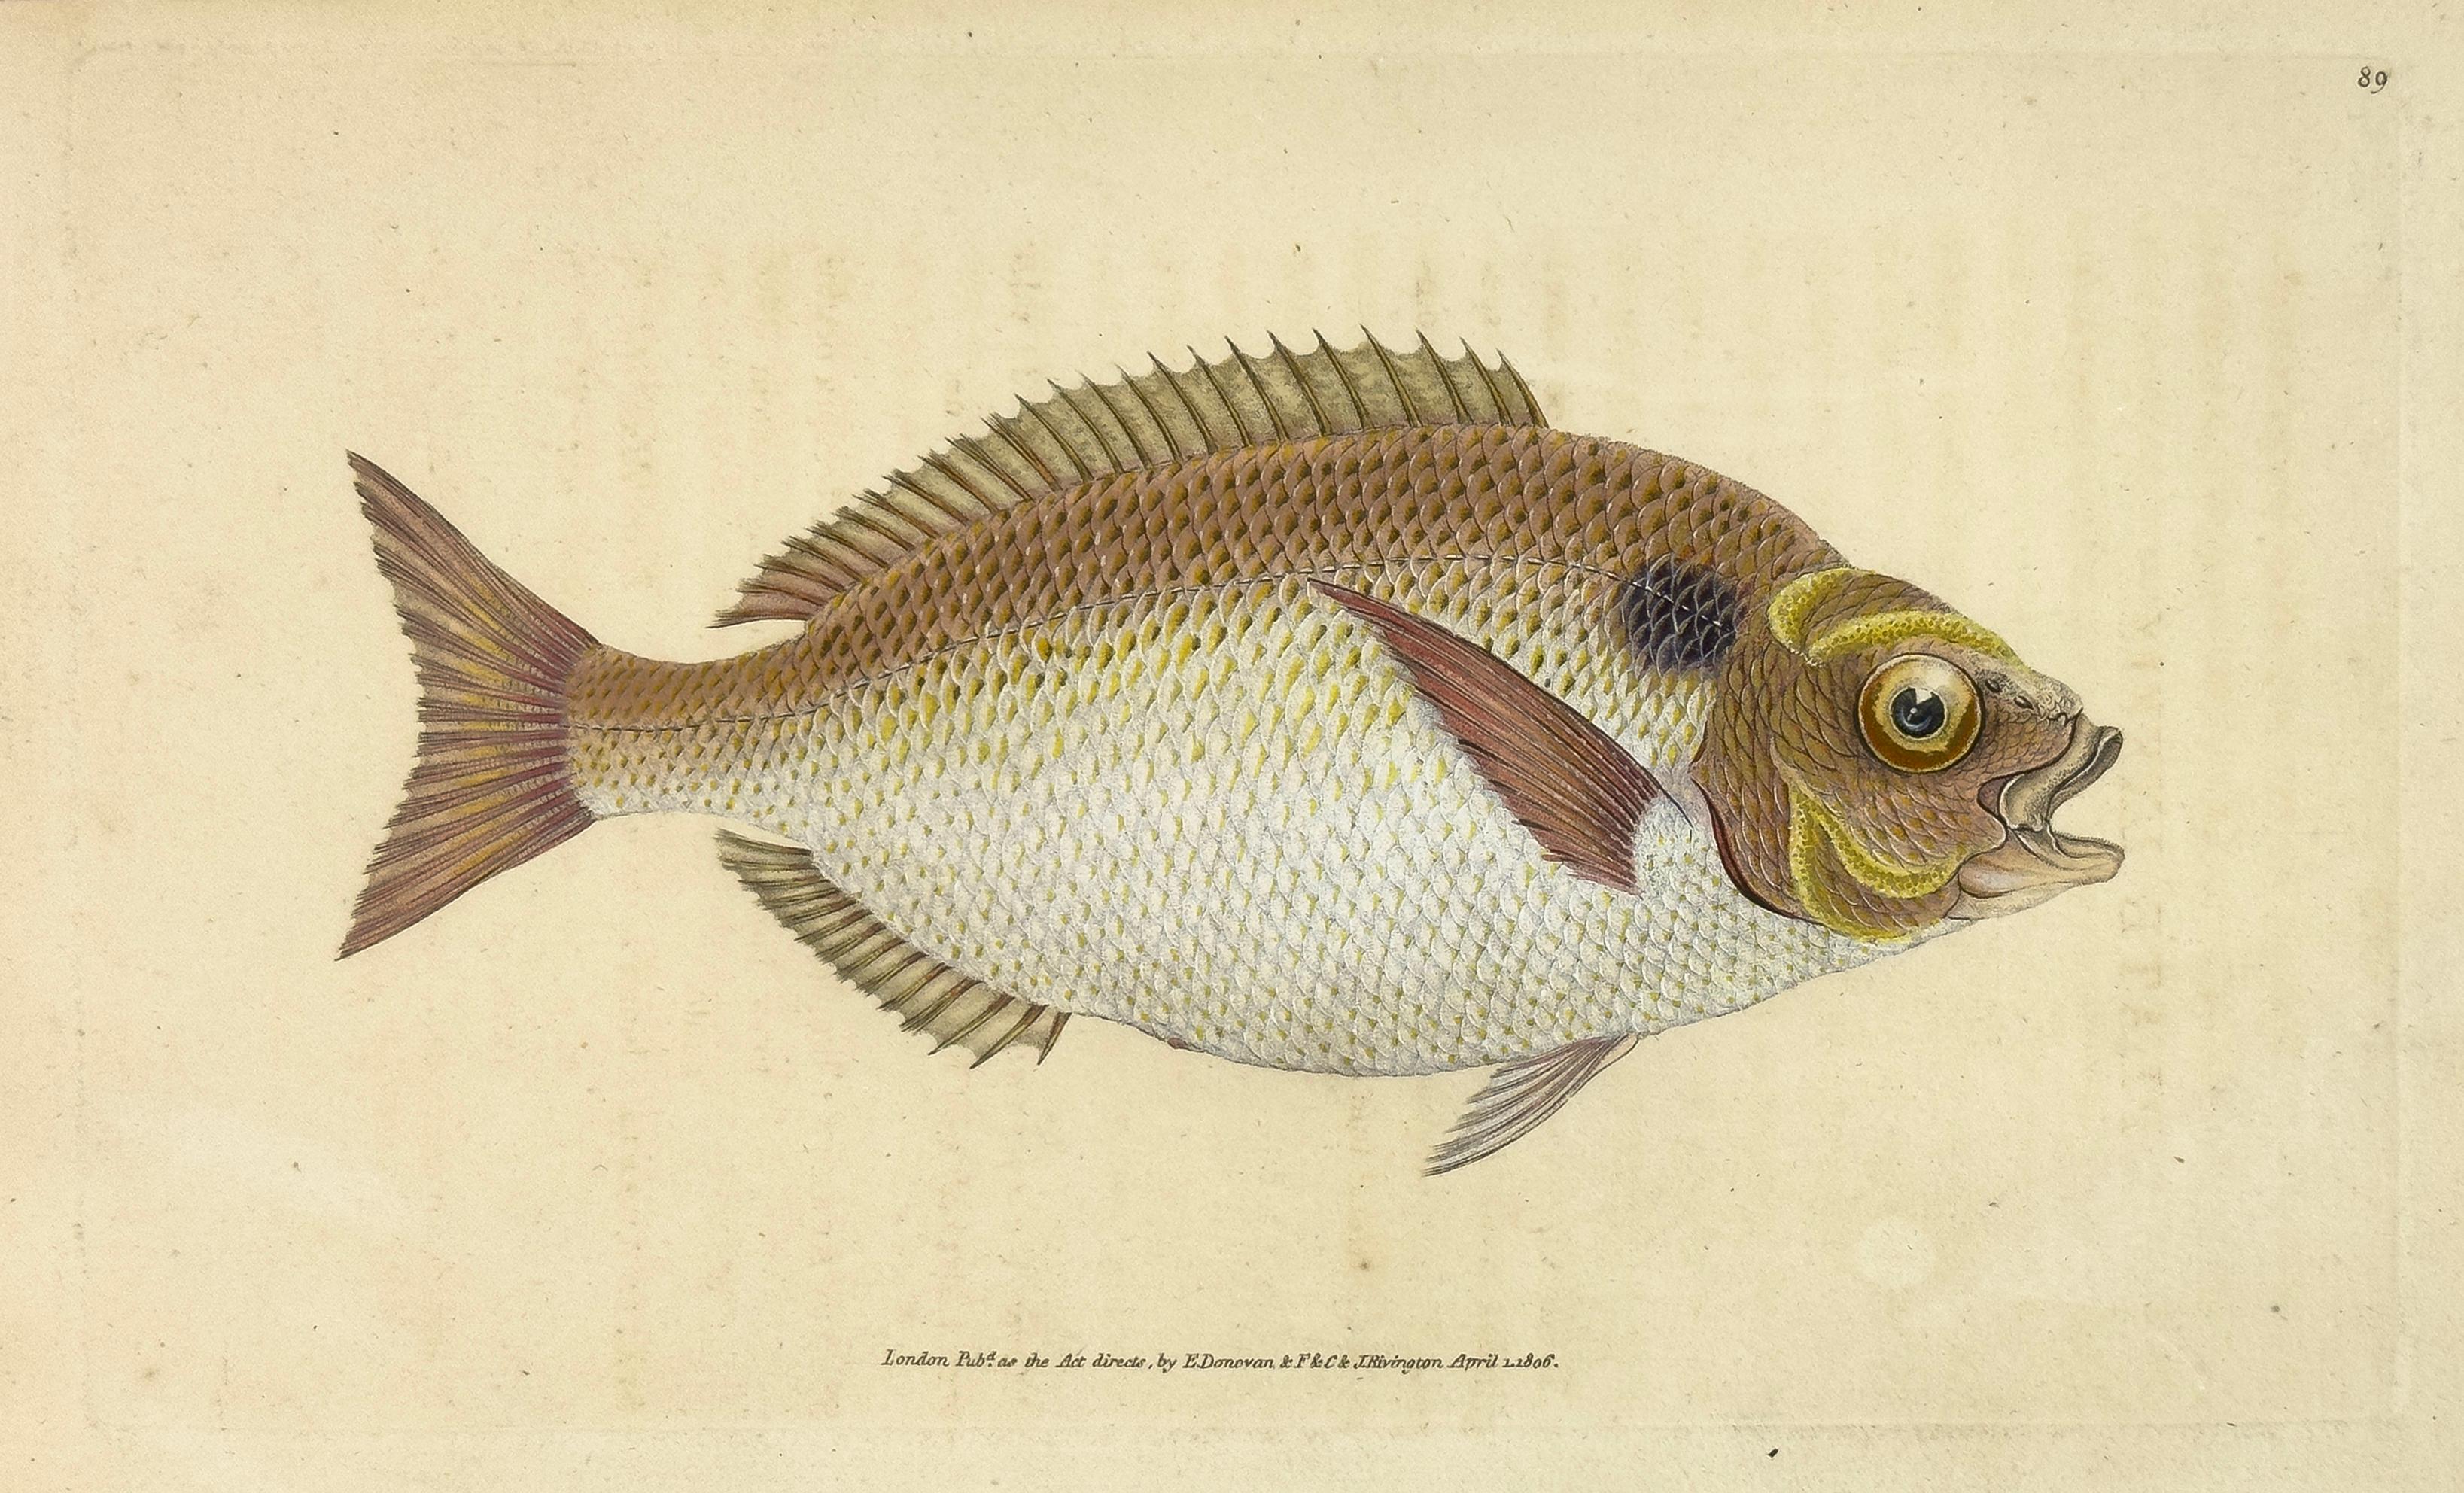 Edward Donovan Animal Print – 89: Sparus aurata, Lunulierter Goldfischkopf